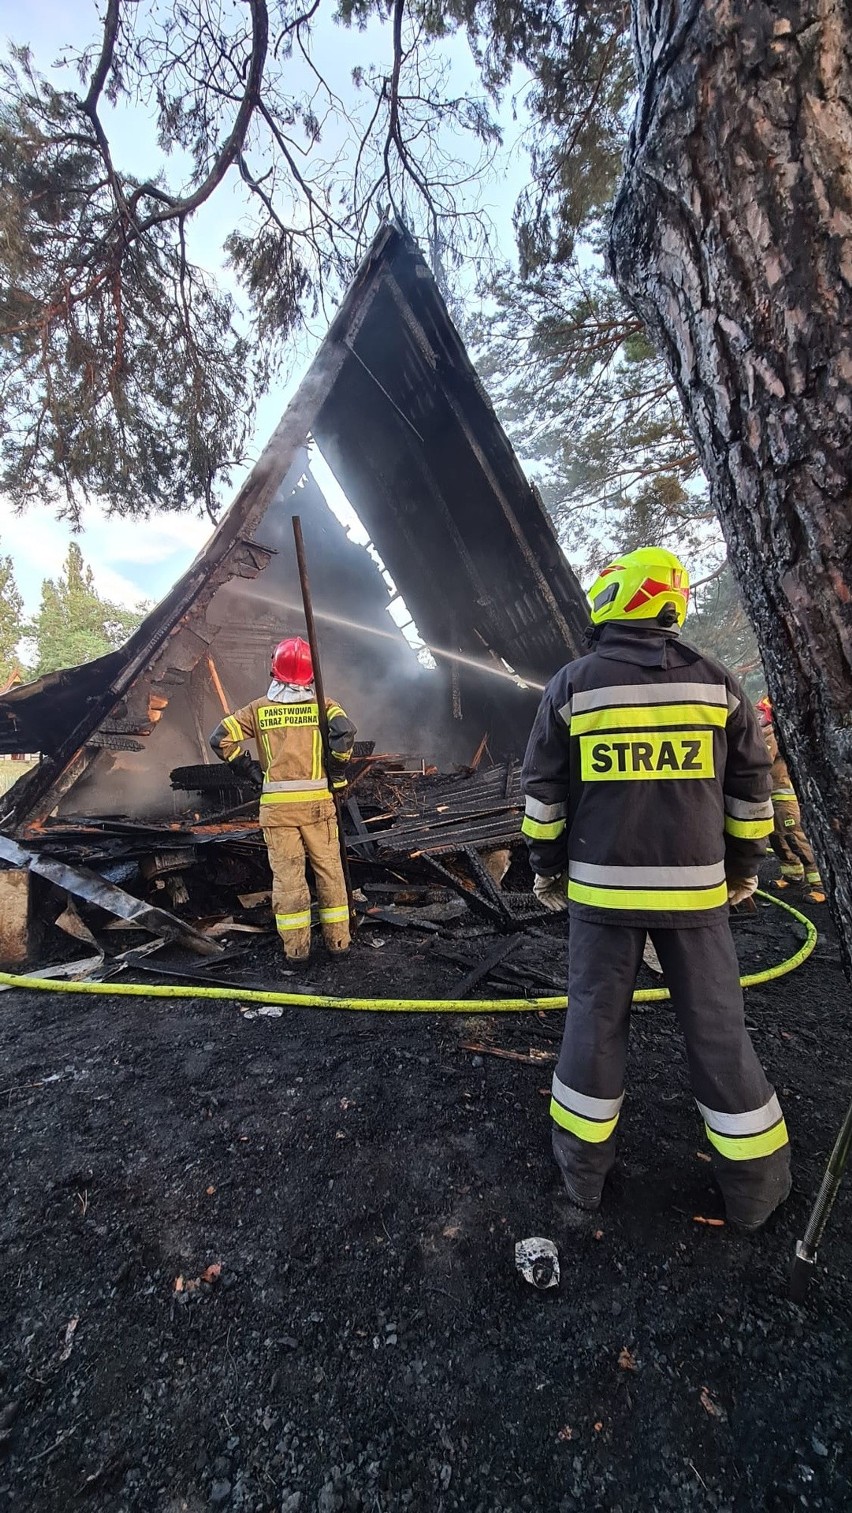  Domek campingowy w Międzyzdrojach na terenie ośrodka wypoczynkowego Trygław spłonął doszczętnie 